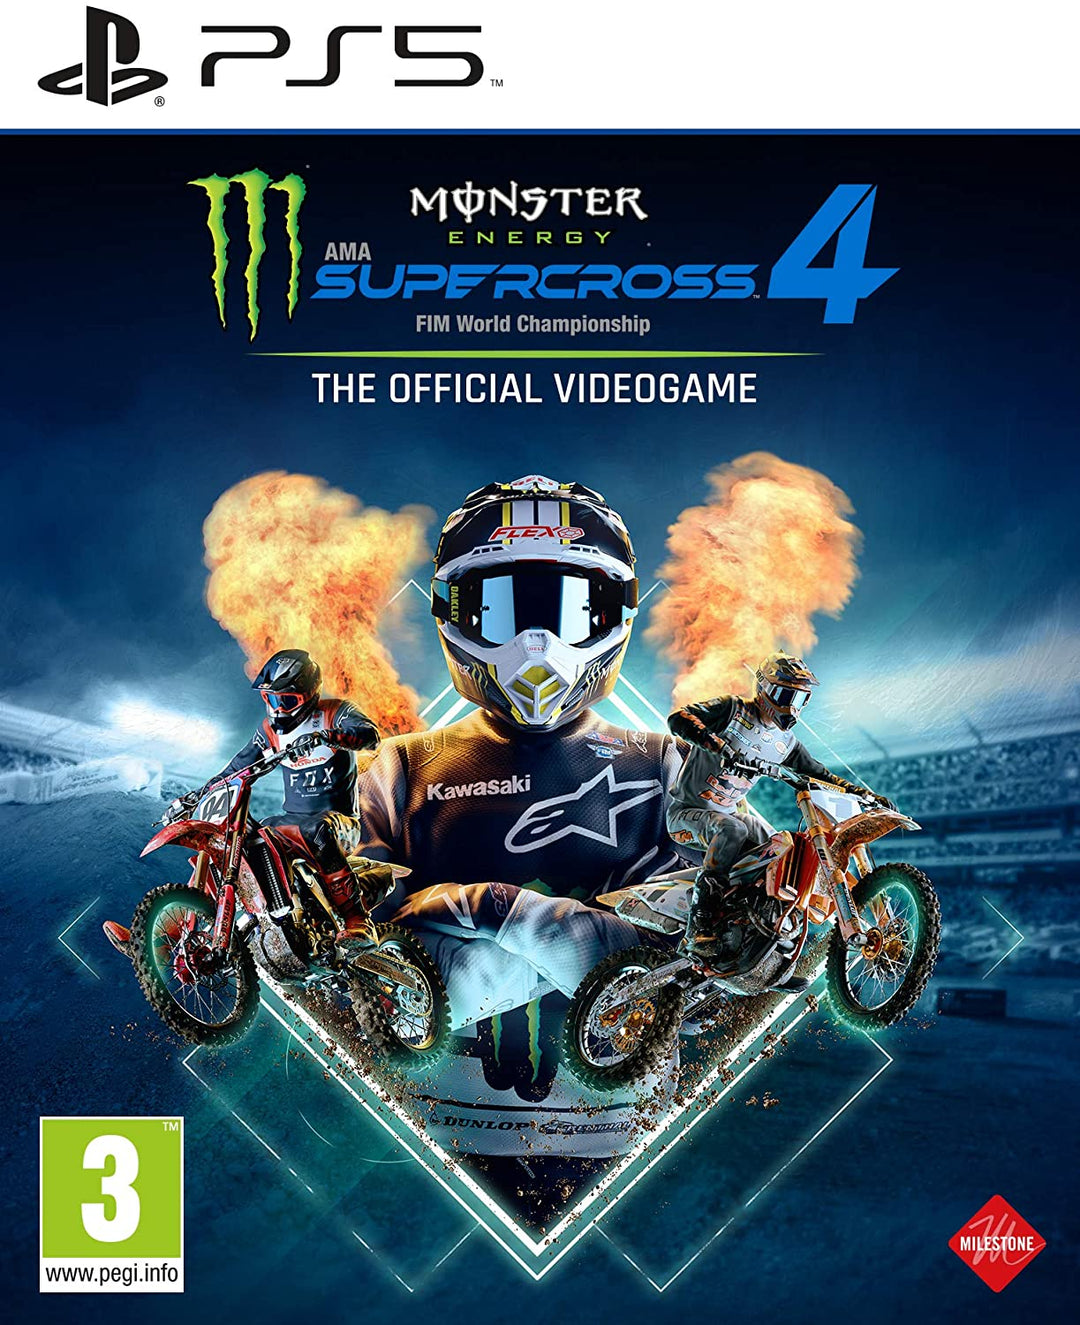 Monster Energy Supercross – Das offizielle Videospiel 4 (PS5)